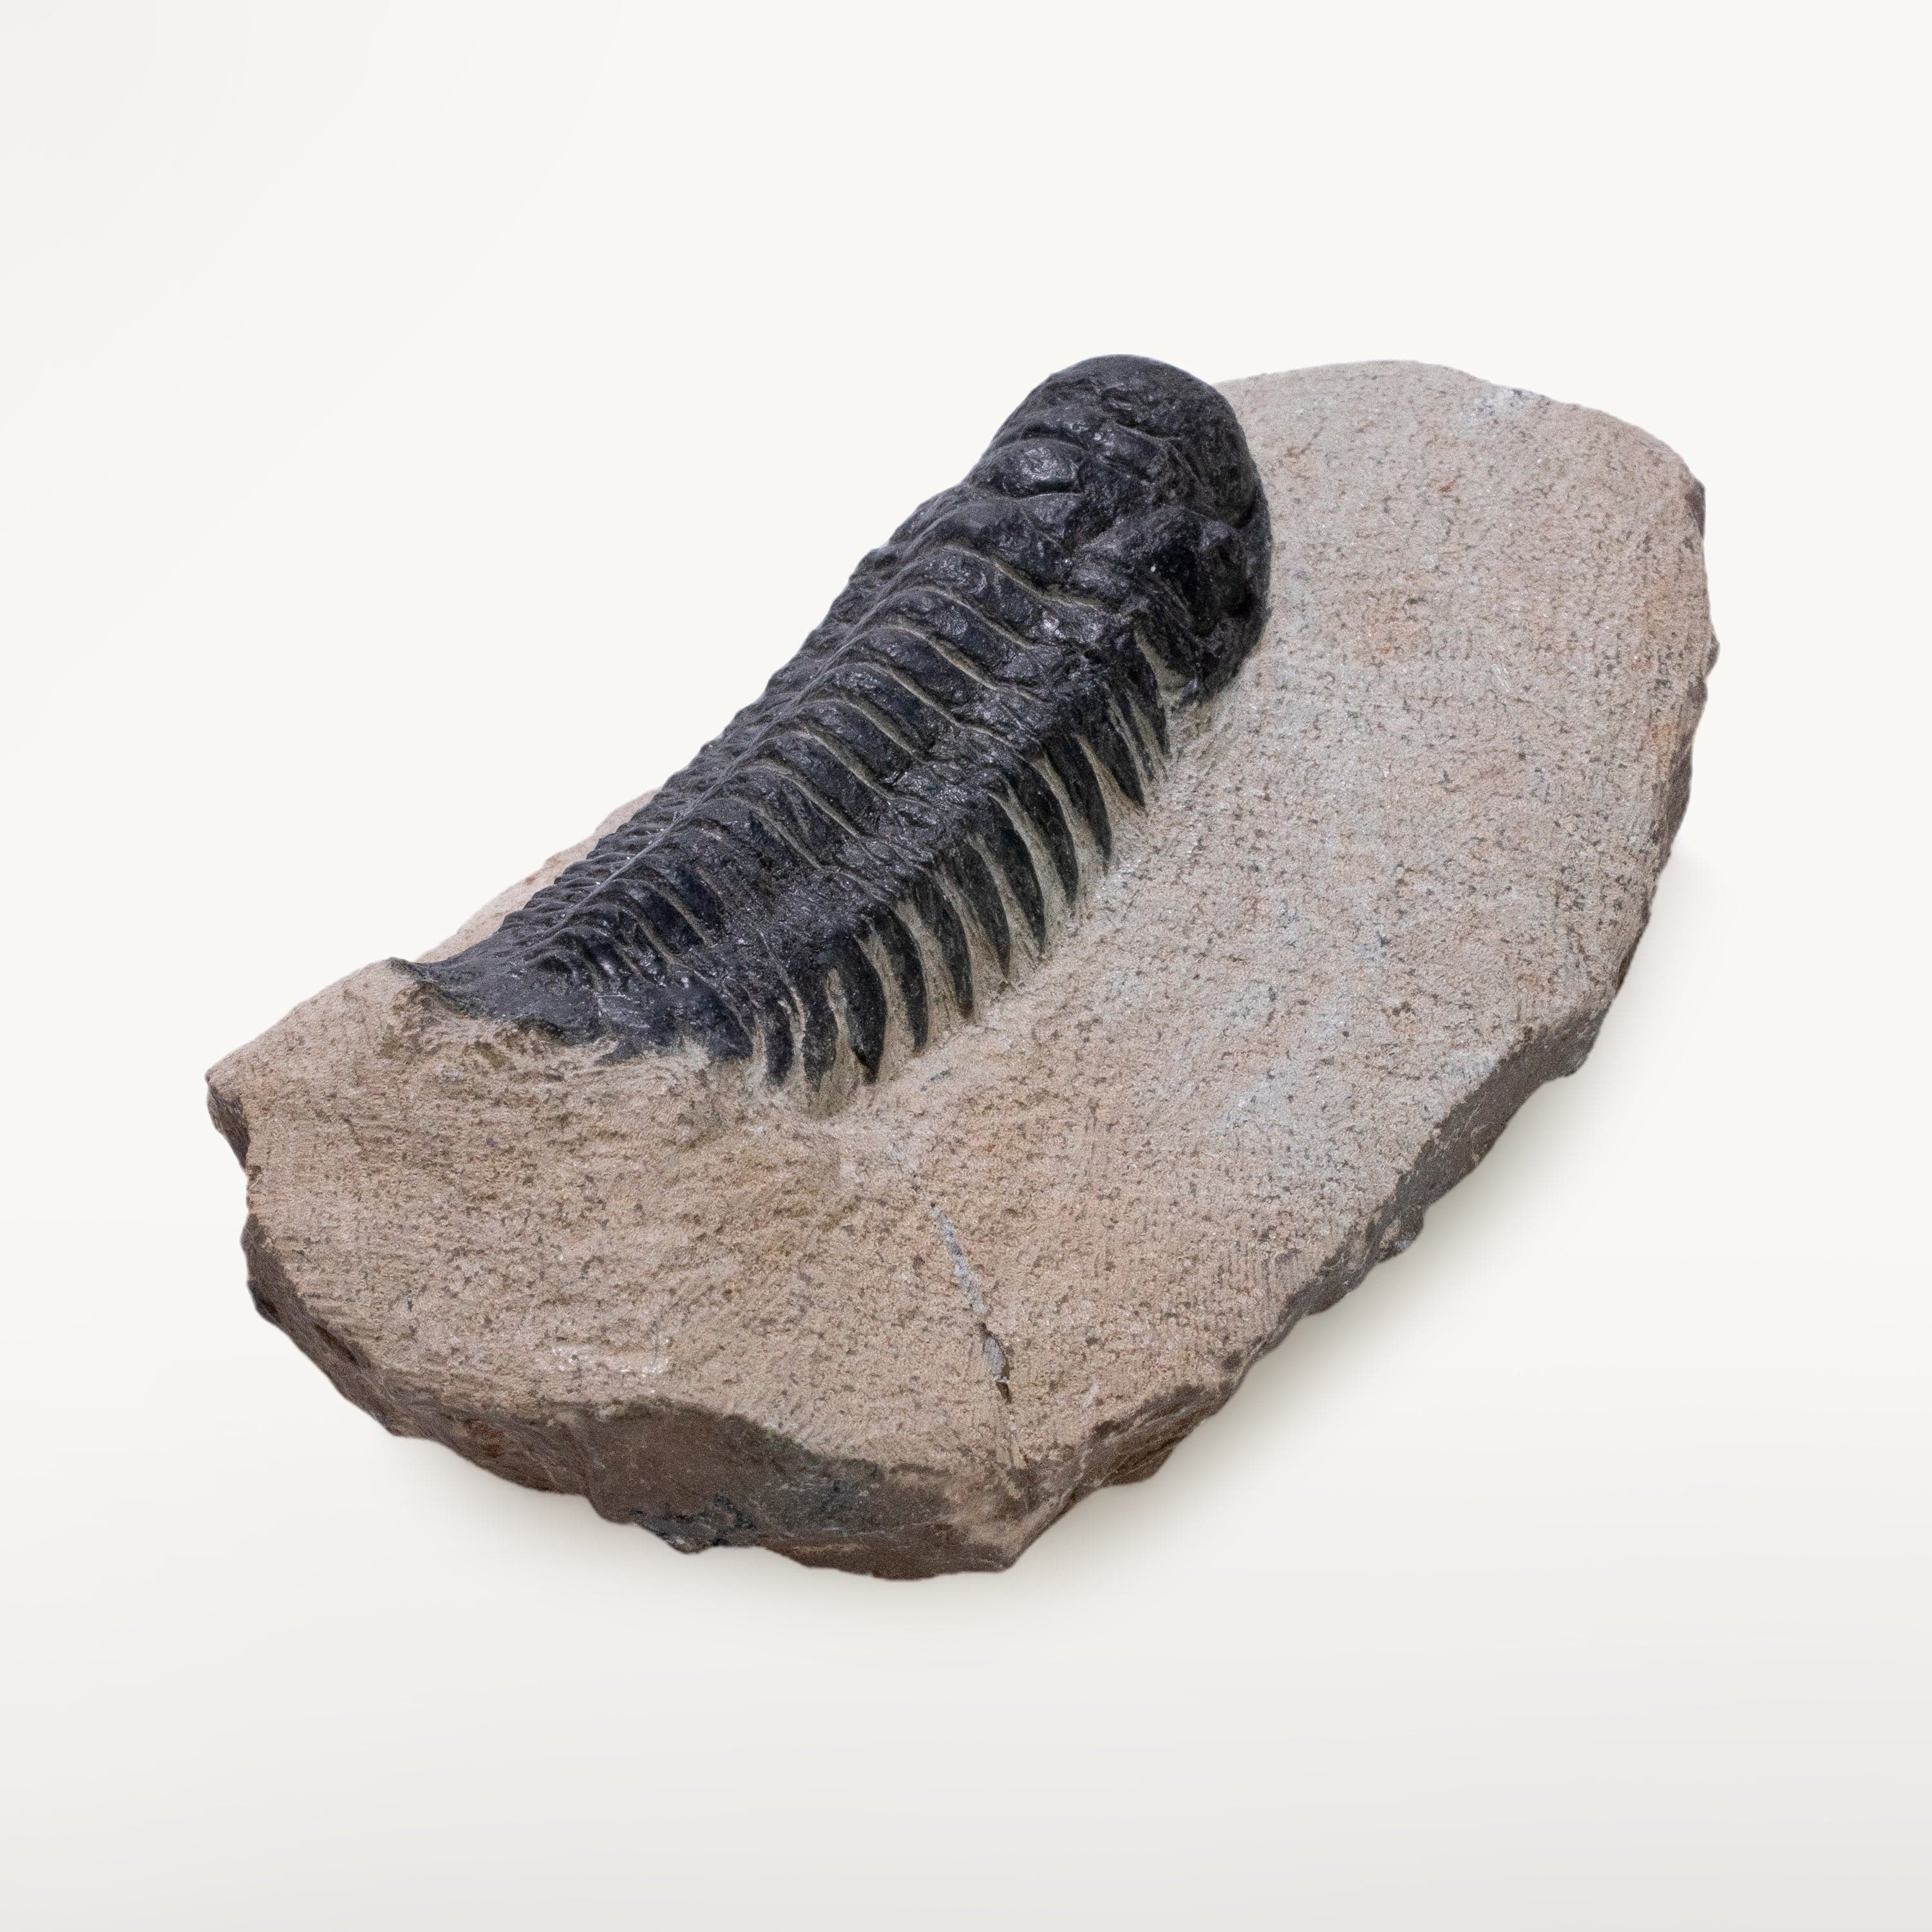 Kalifano Fossils & Minerals Crotalocephalus Trilobite in Matrix from Morocco TR800-CRO